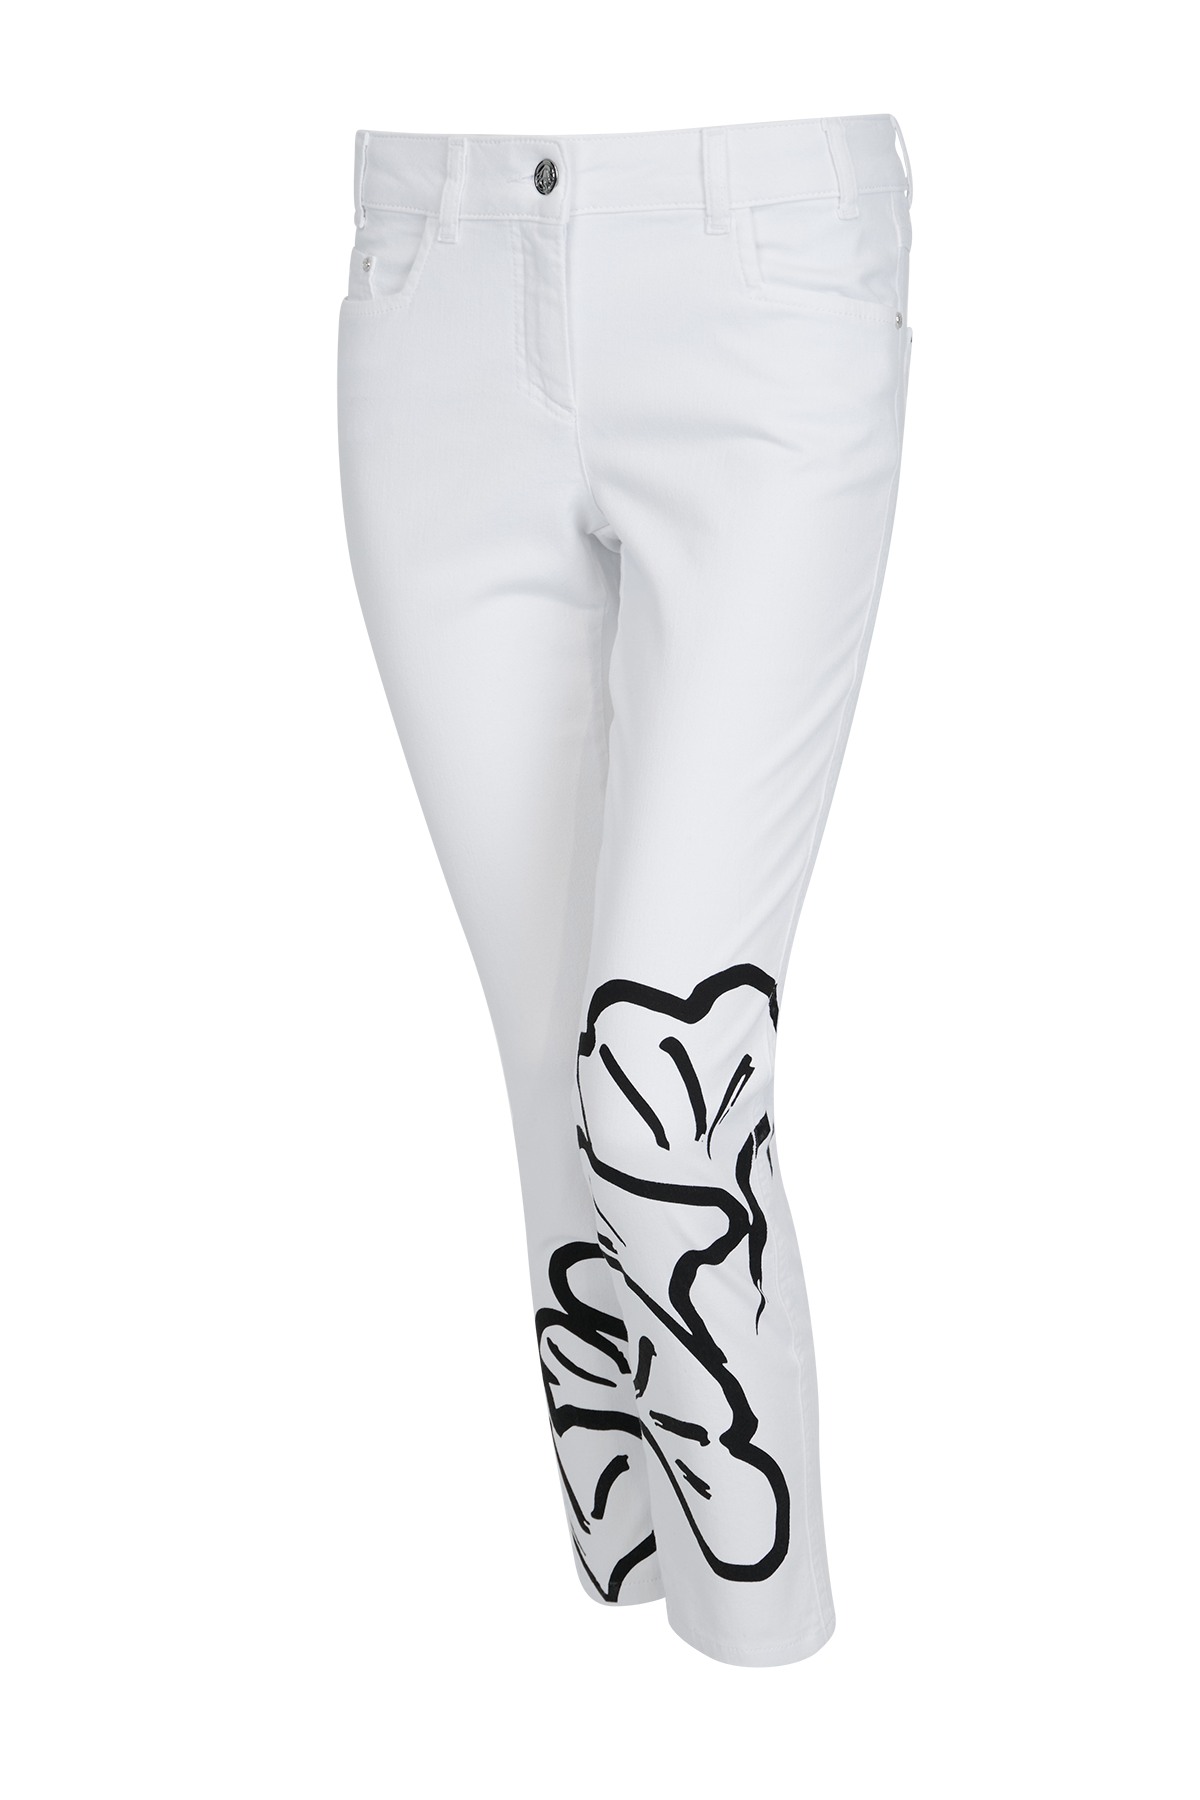 Sportalm kalhoty Valery bright white Velikost: 36